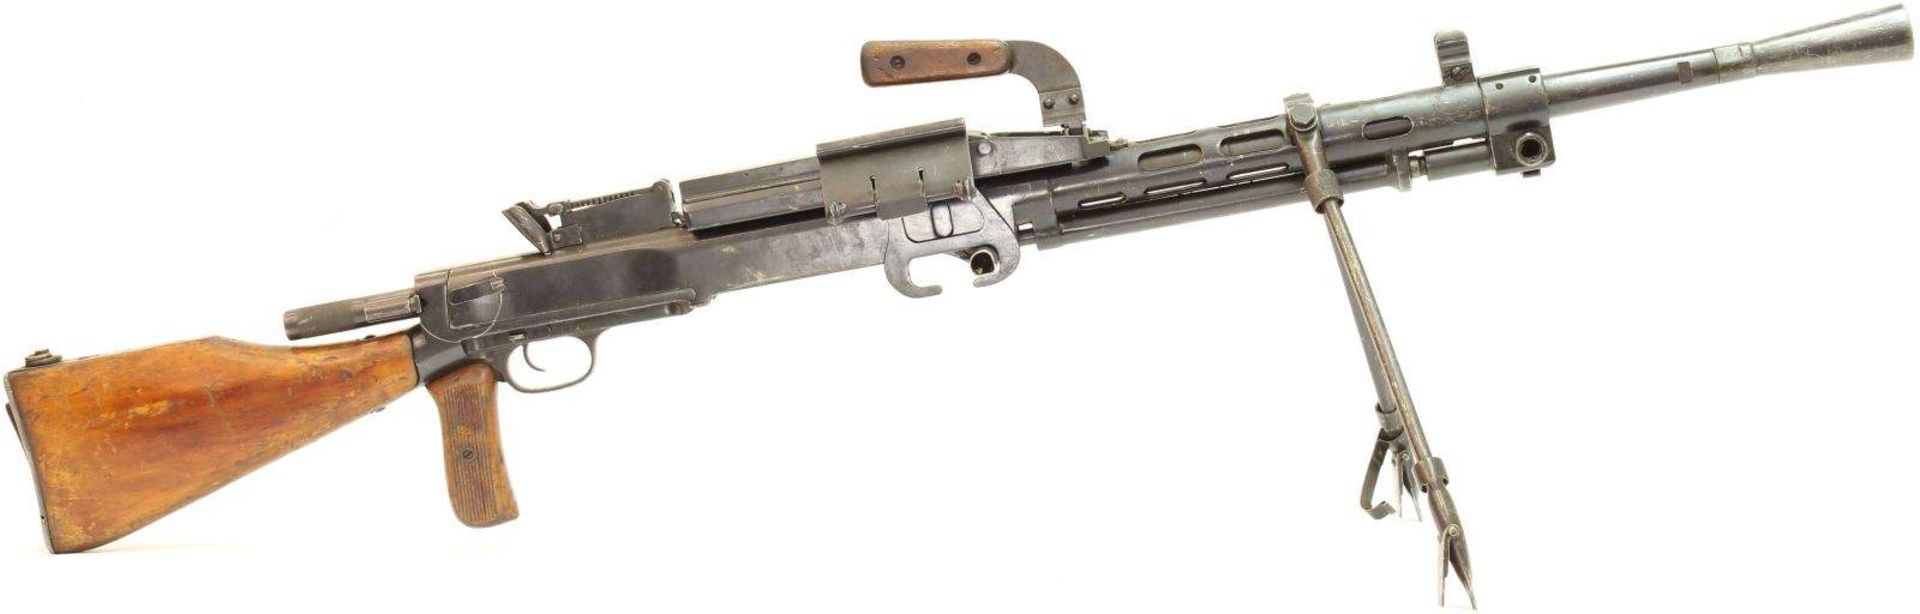 Maschinengewehr, russ. RP 1946, hergestellt 1948, Kal. 7.62x54R. LL 605mm, TL 1270mm, zuschiessender